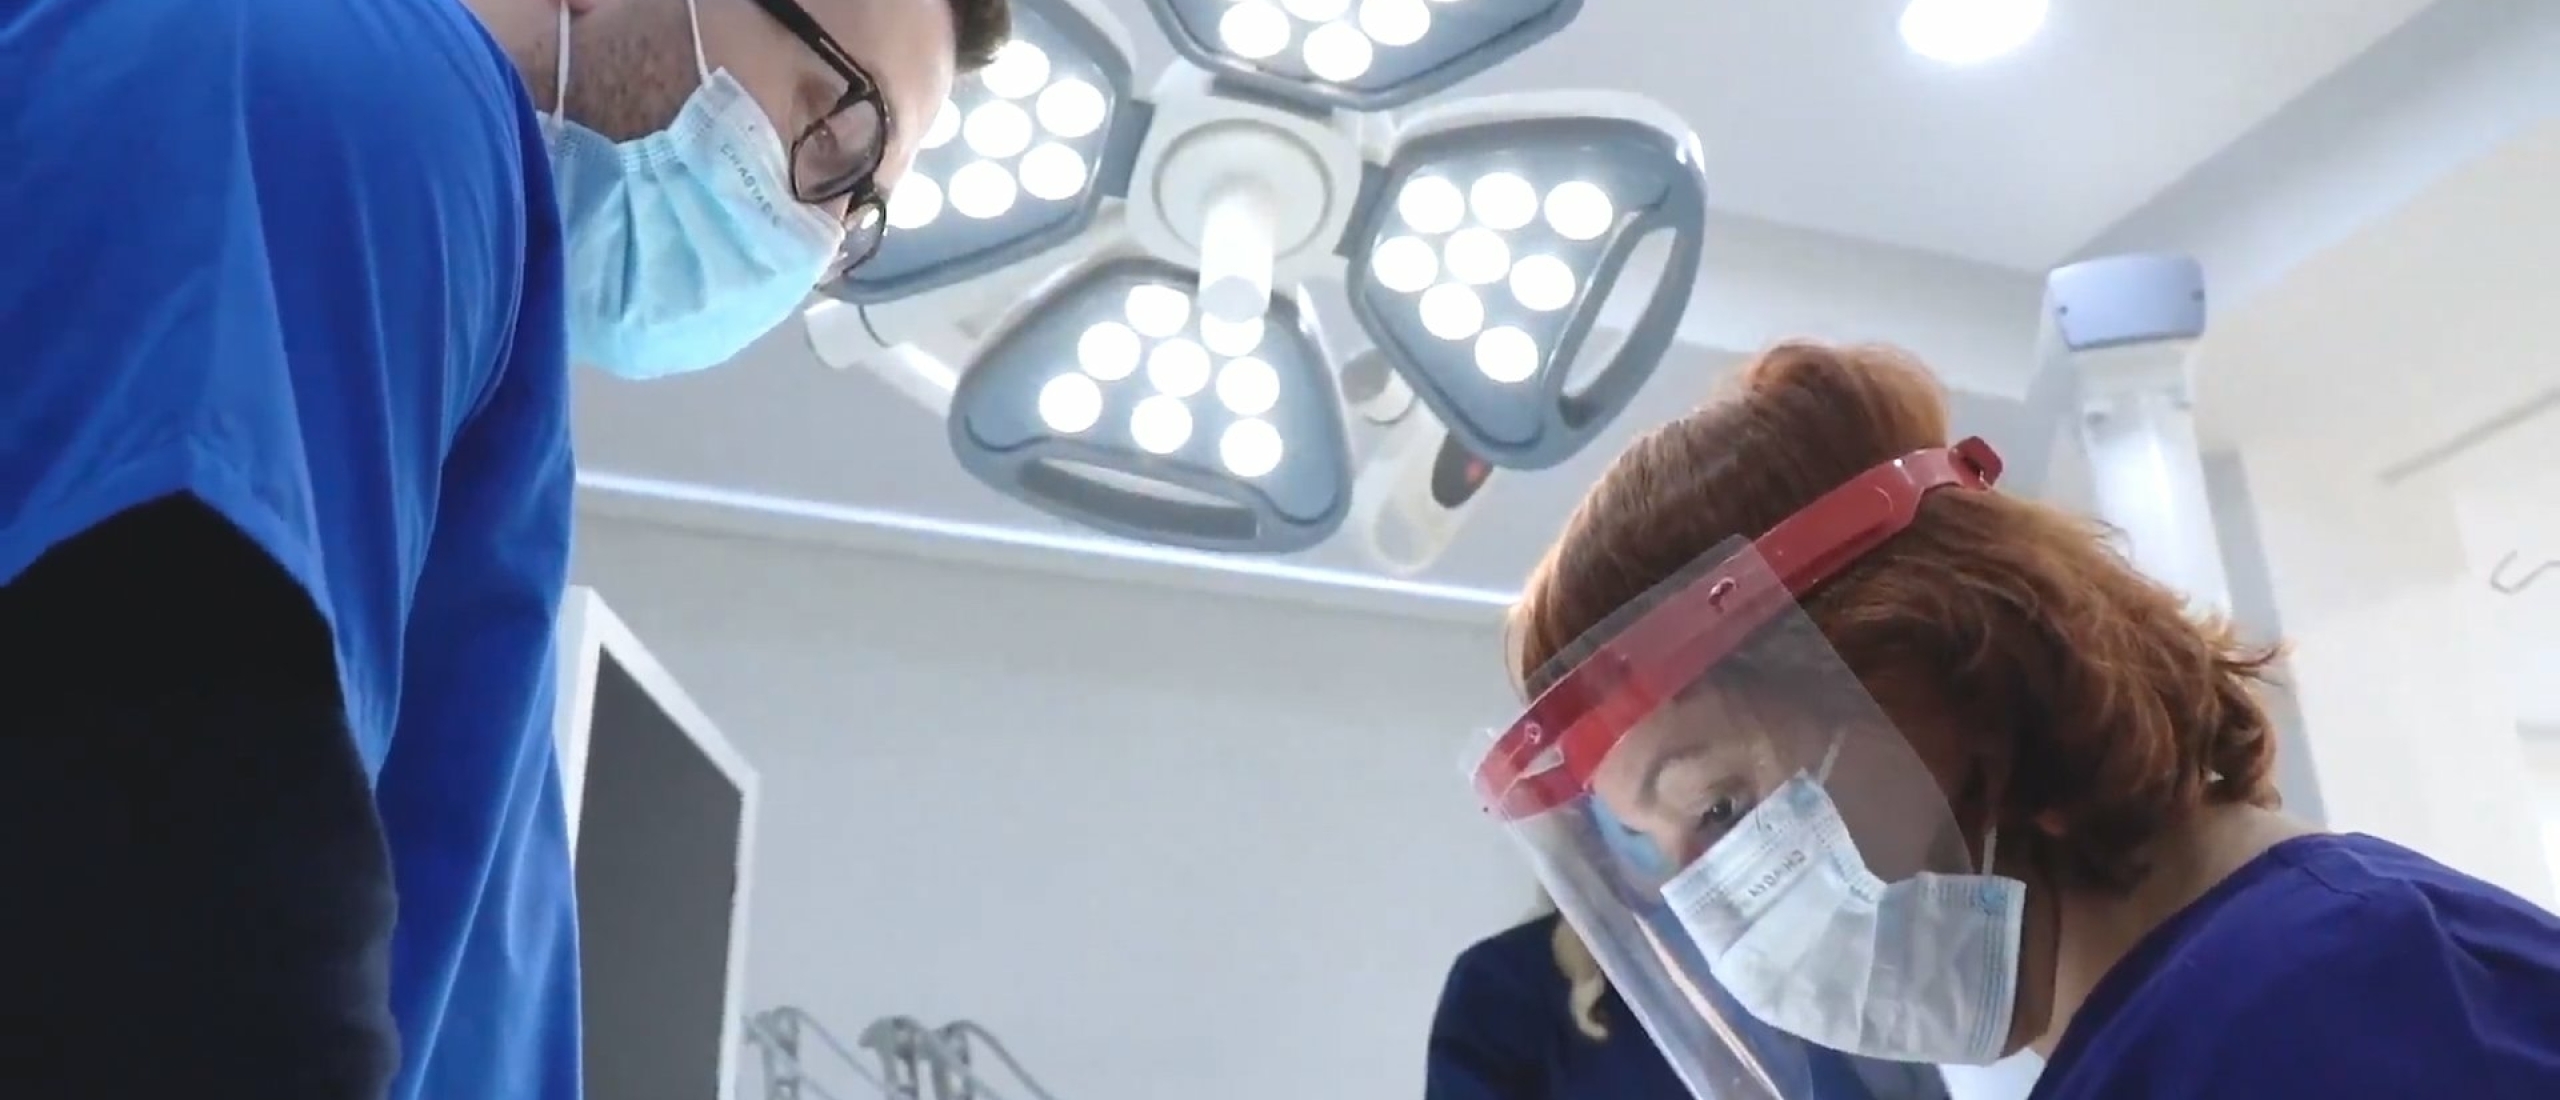 Implantaat Plaatsen in jouw Gebit | Hoe werken Implantaten voor Tanden en Kiezen?